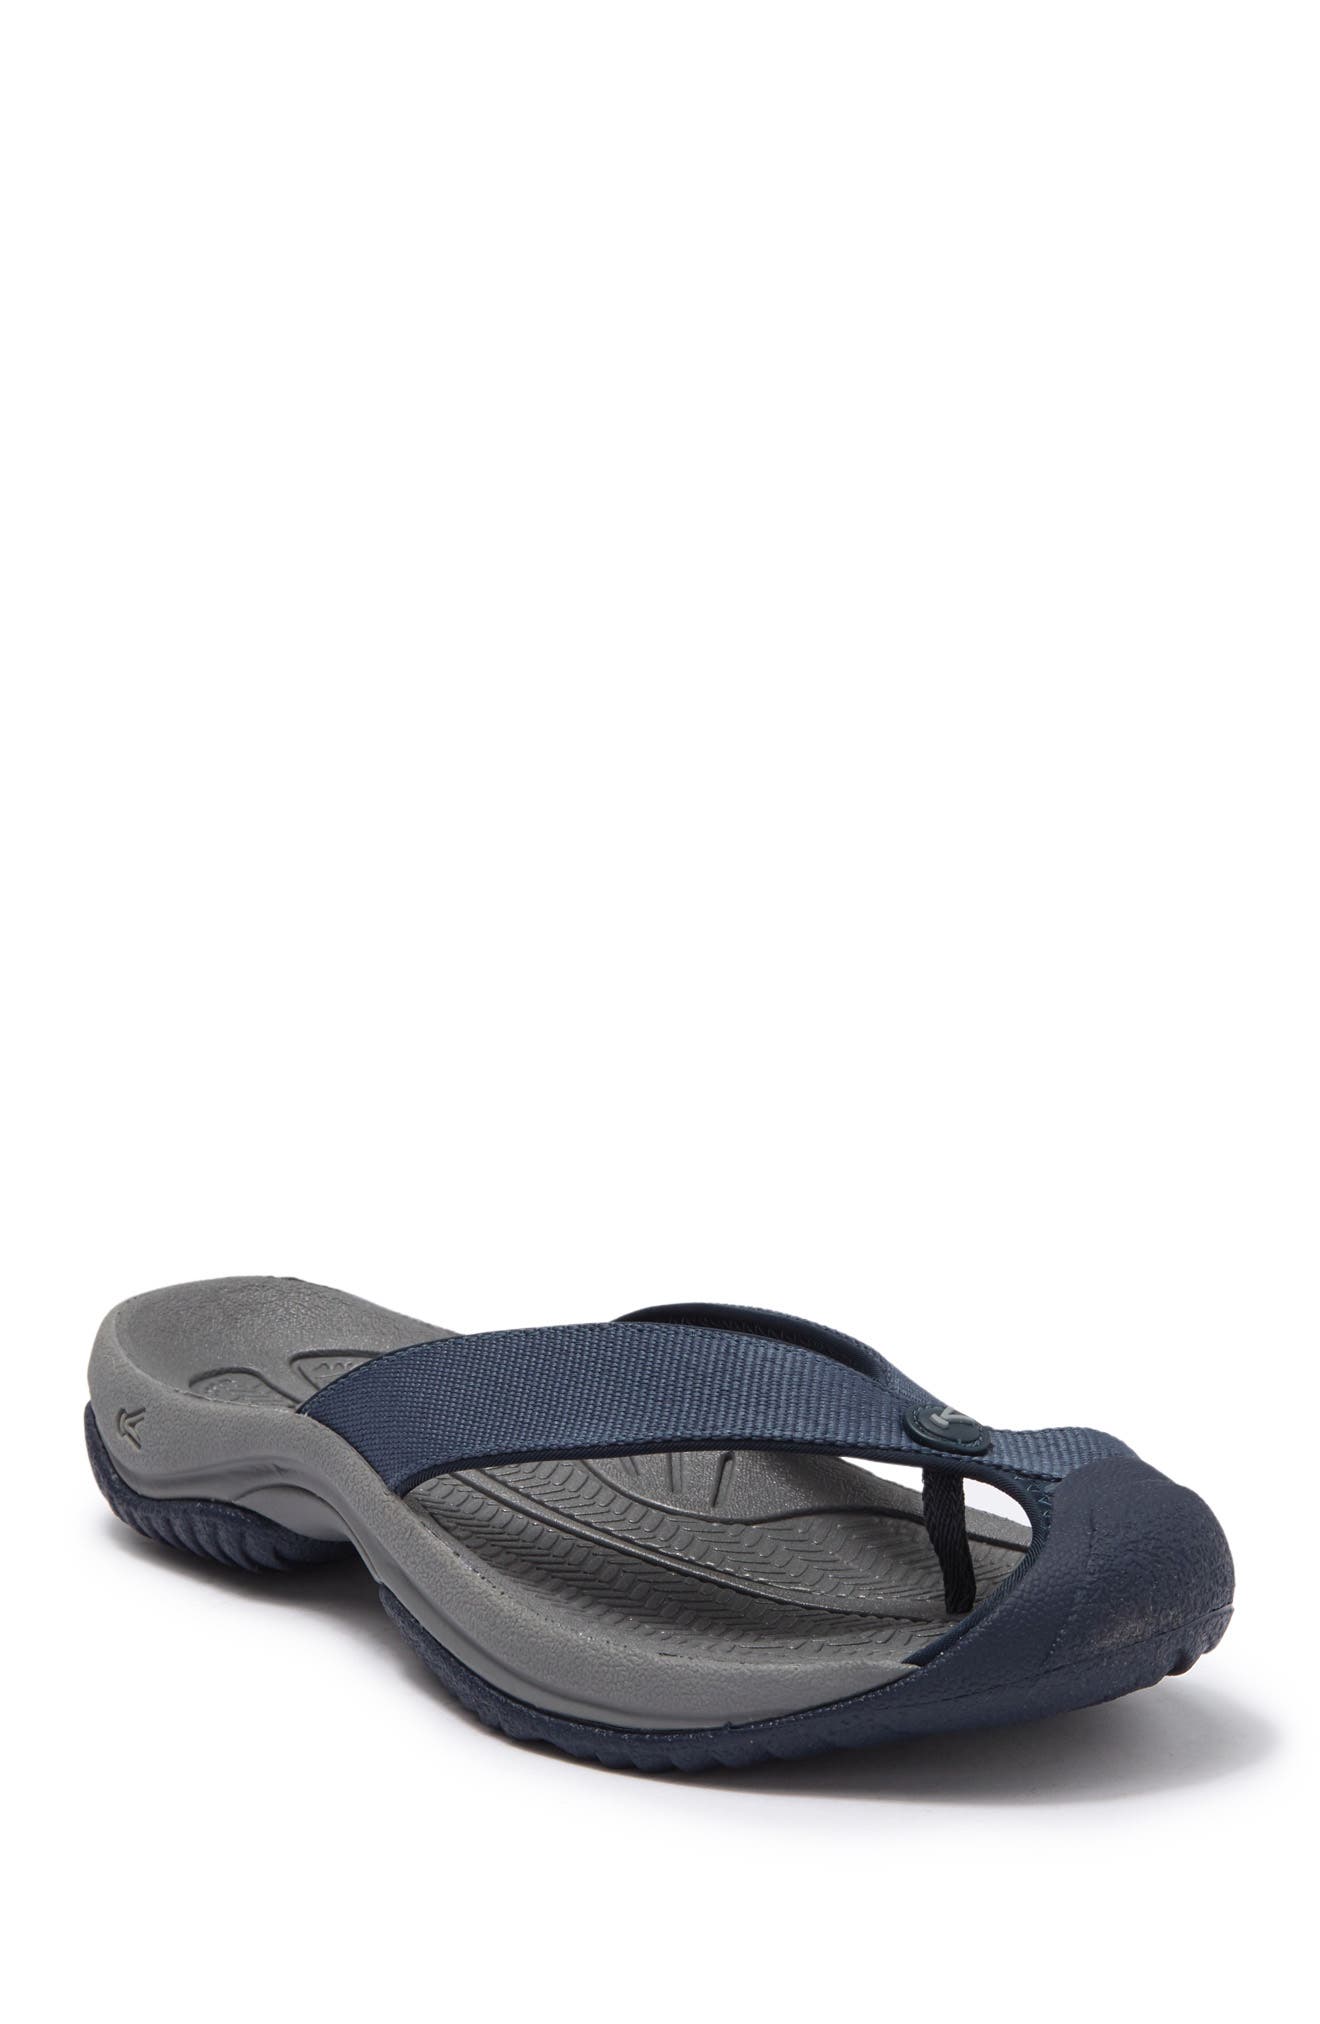 Buy > keen flip flops with toe cover > in stock